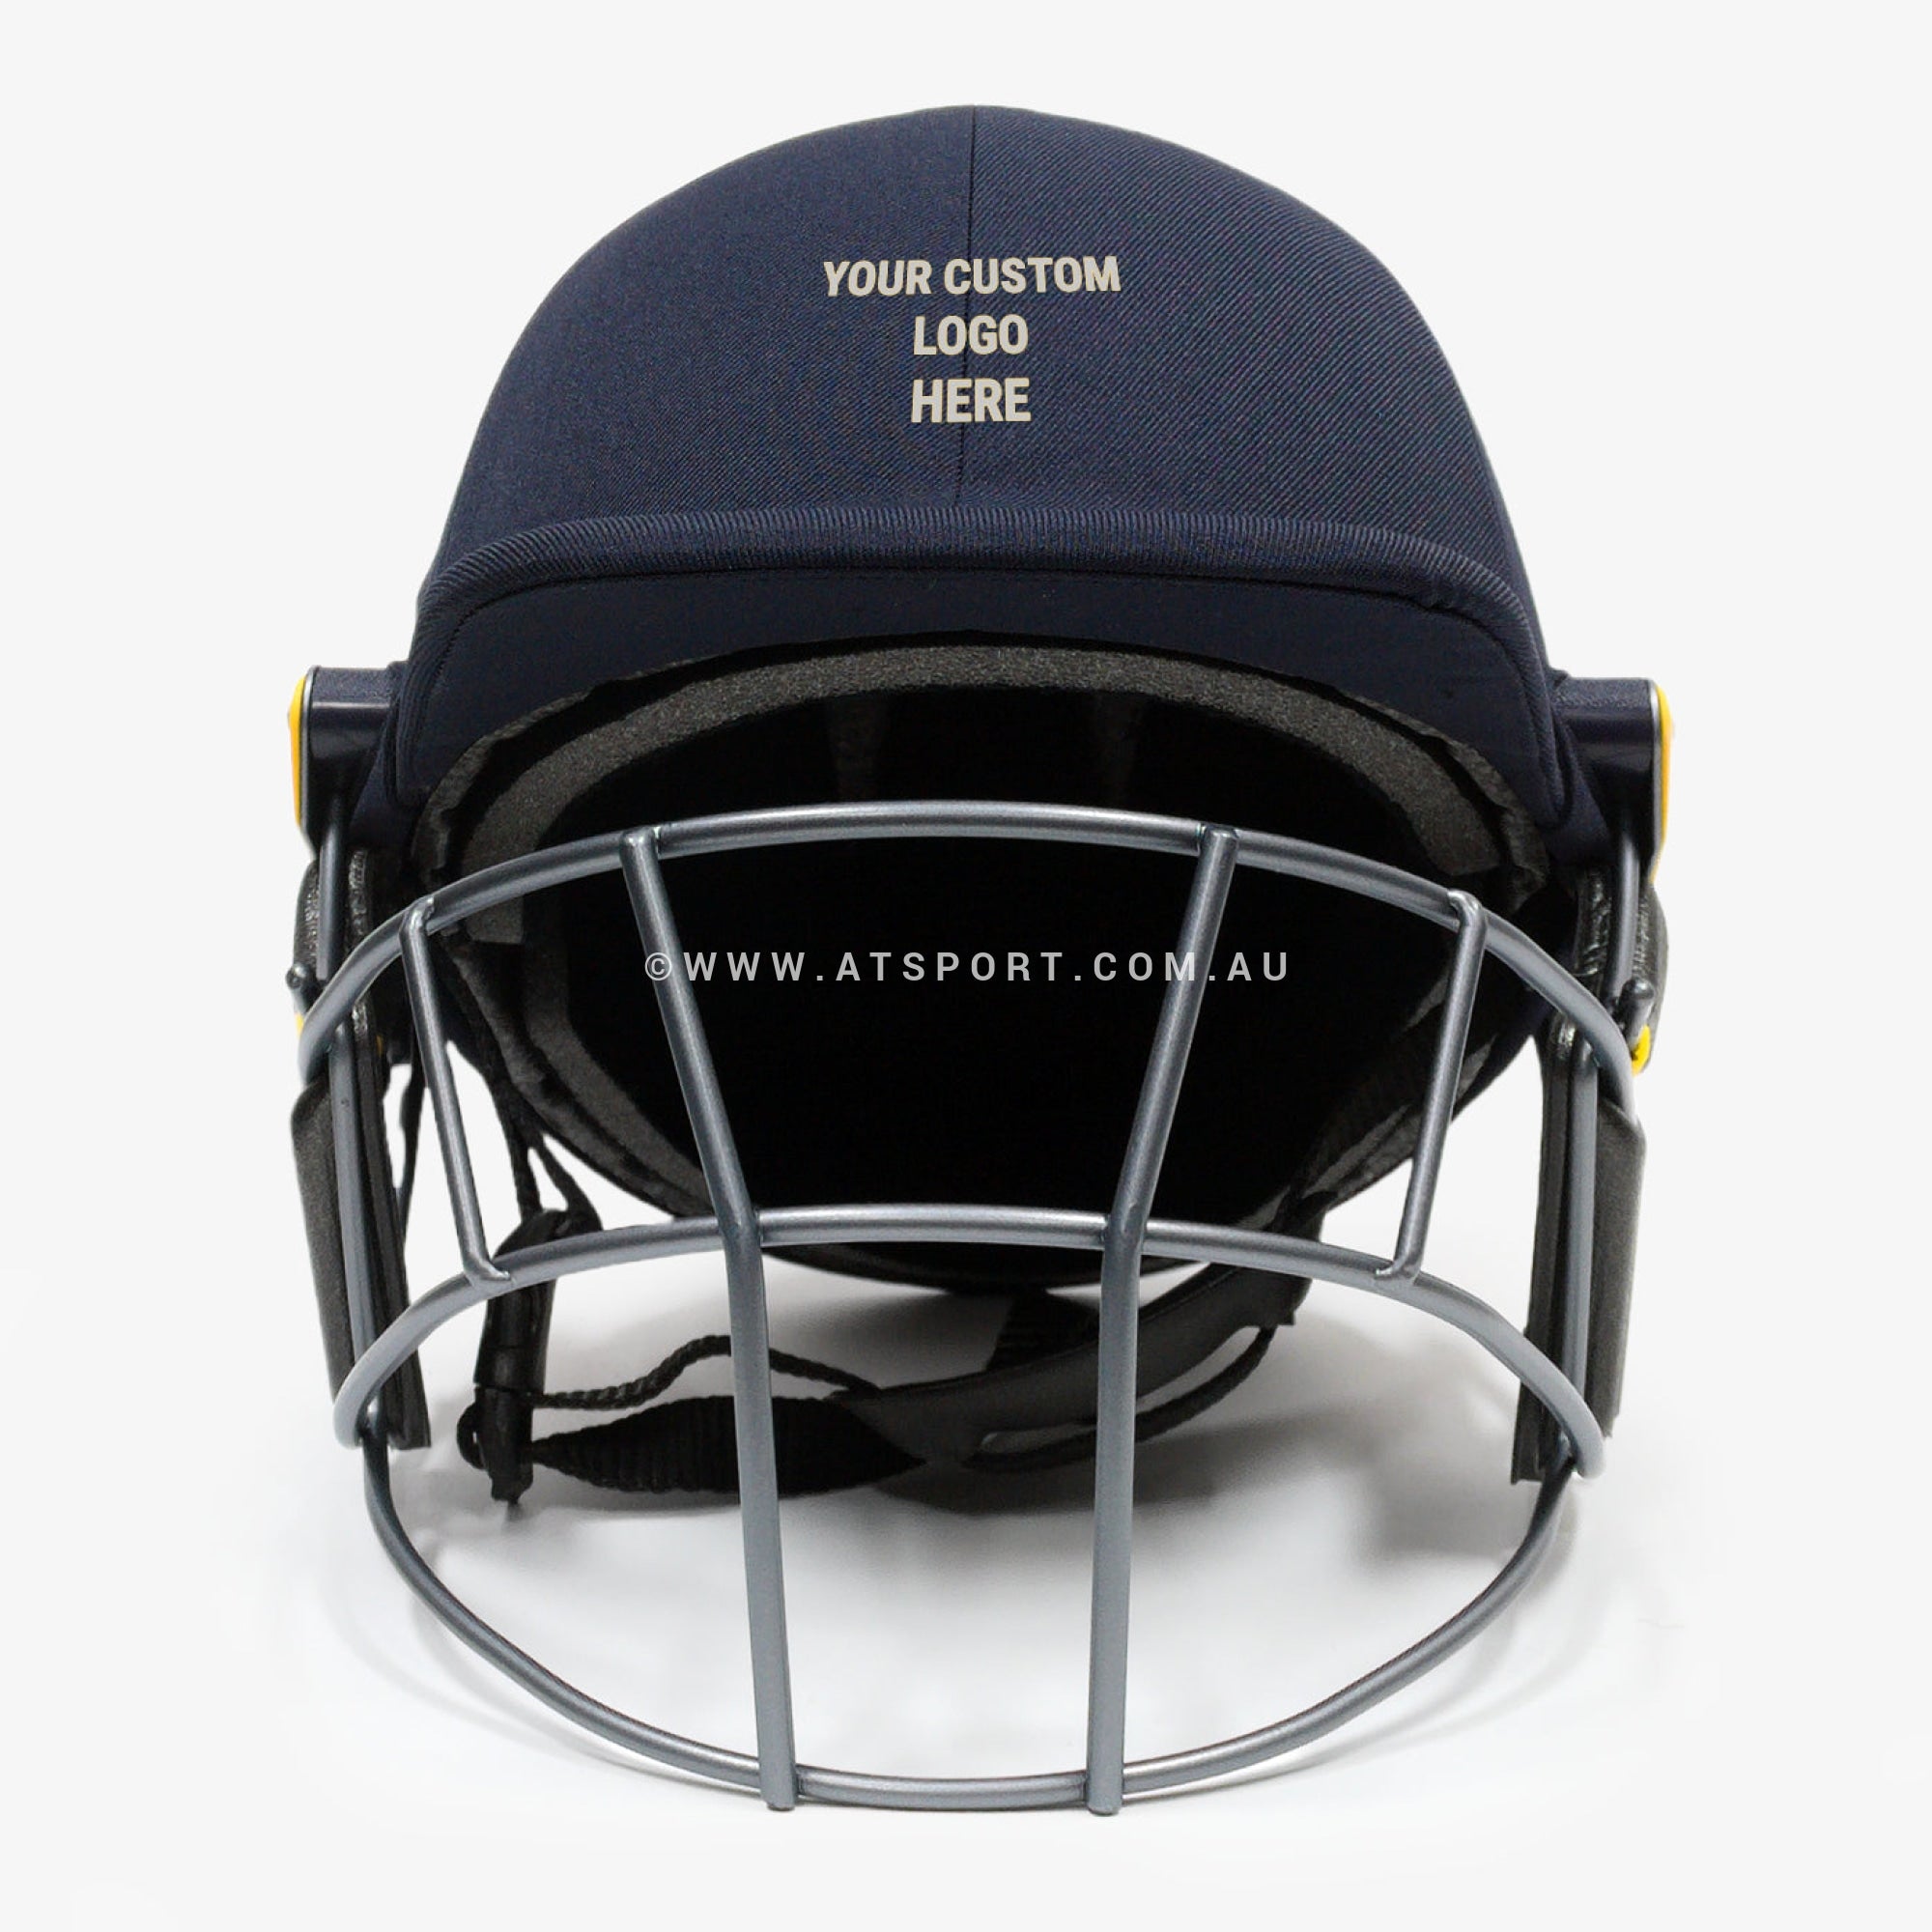 Masuri T LINE Cricket Helmet - CUSTOM LOGO - AT Sports